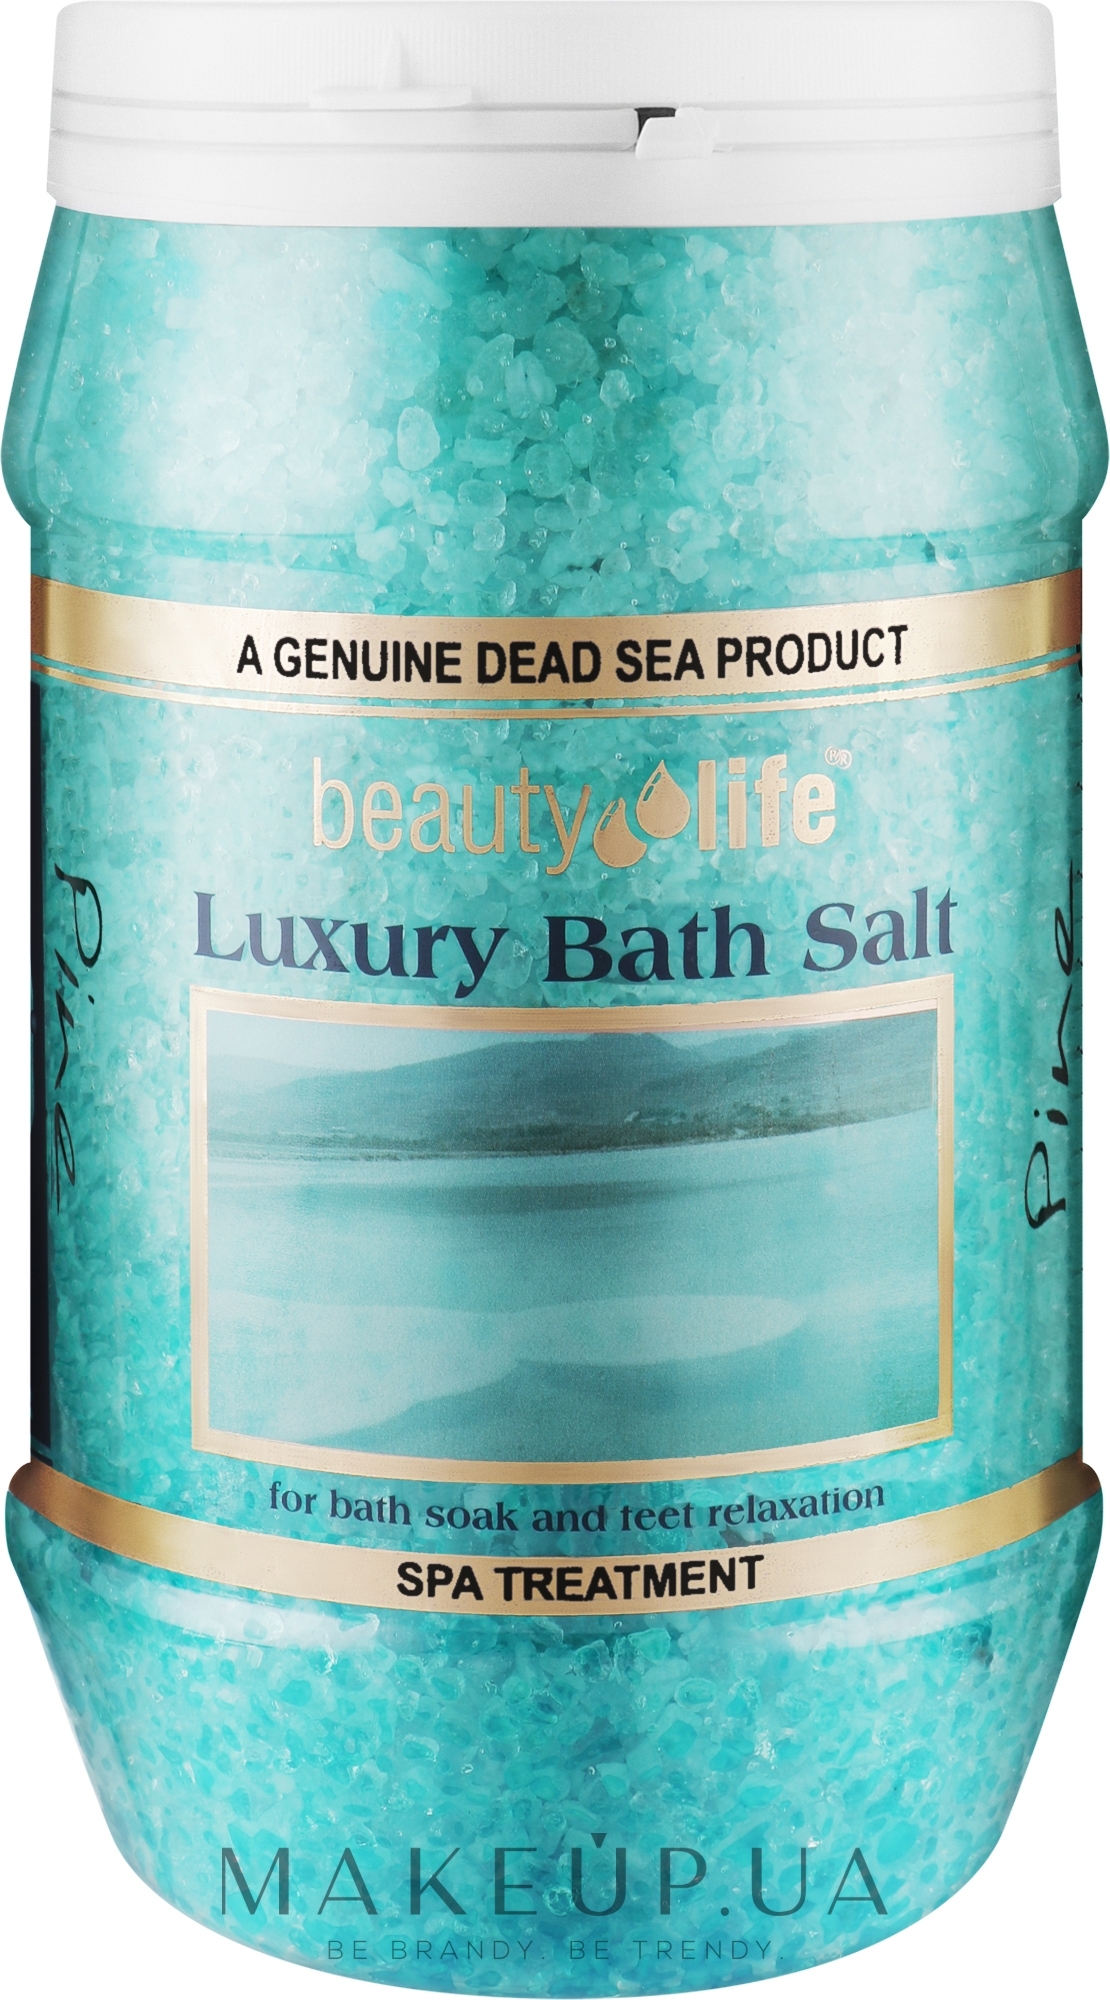 Сіль Мертвого моря для ванн "Сосна" - Aroma Dead Sea Luxury Bath Salt Pine — фото 1300g